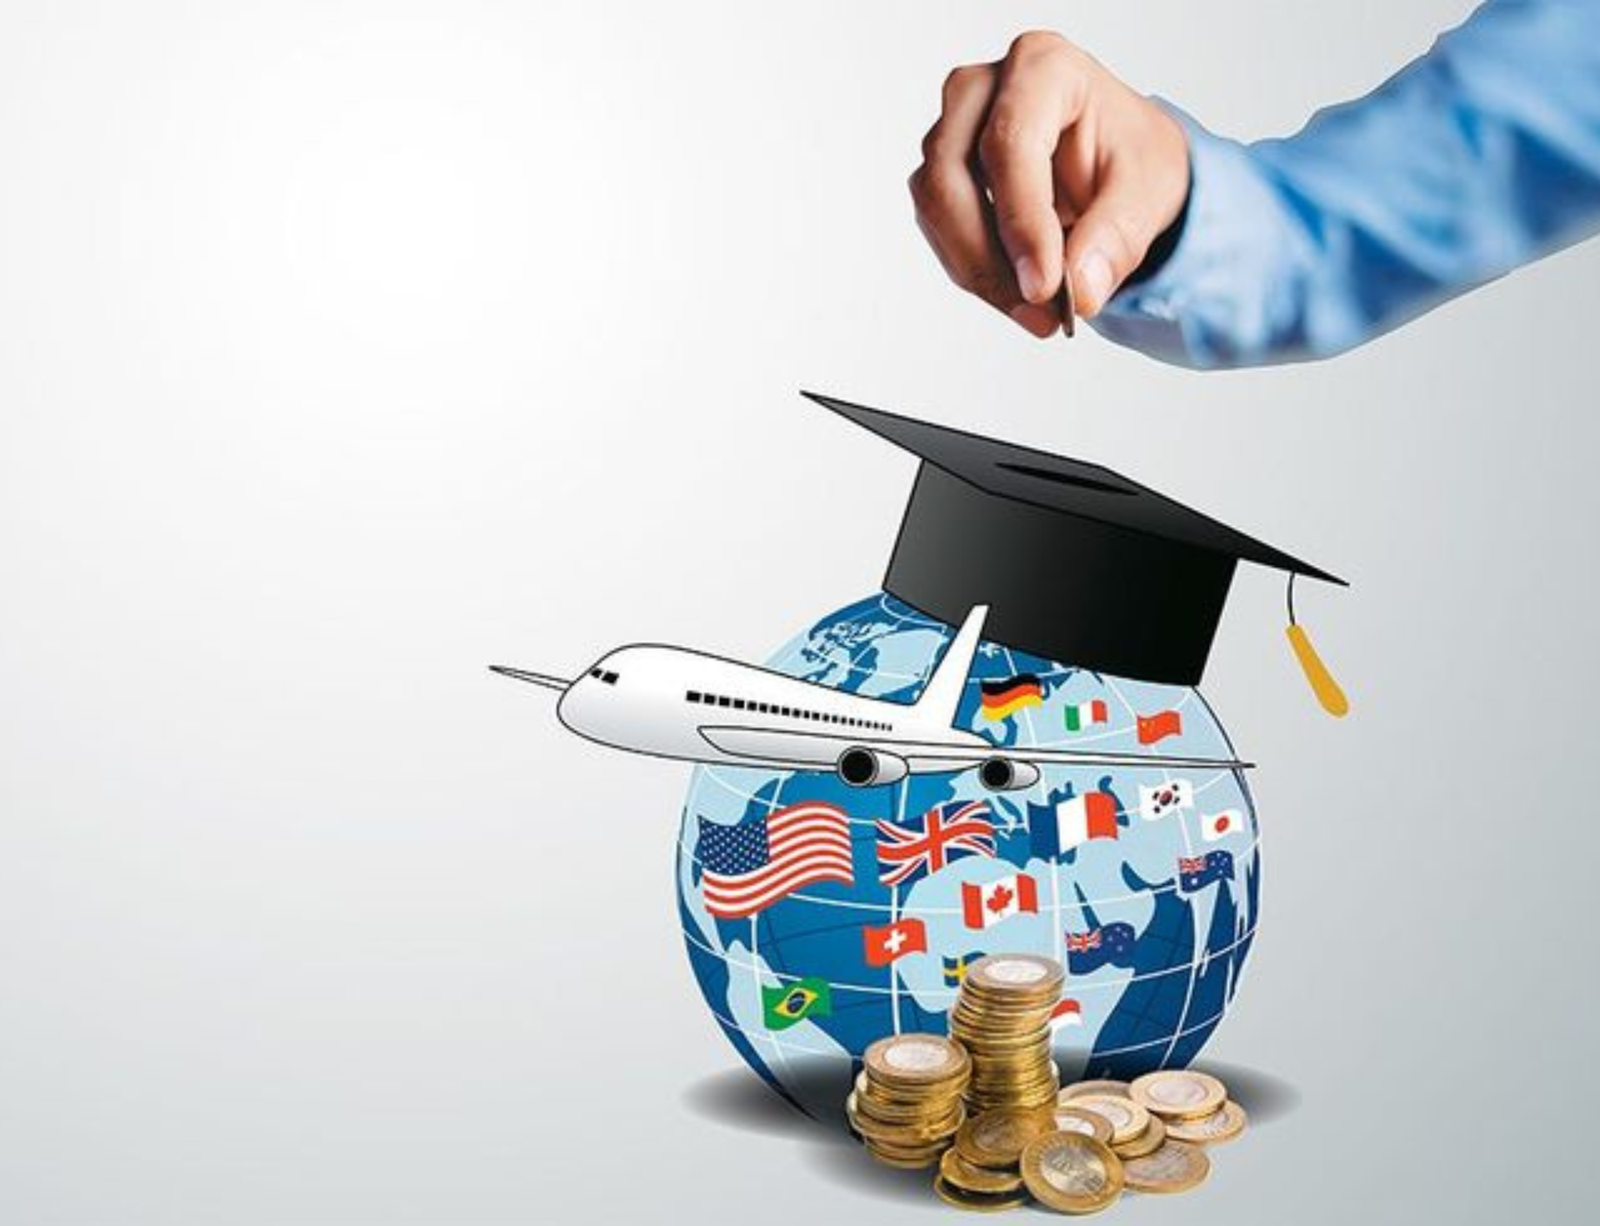 Abroad education loan